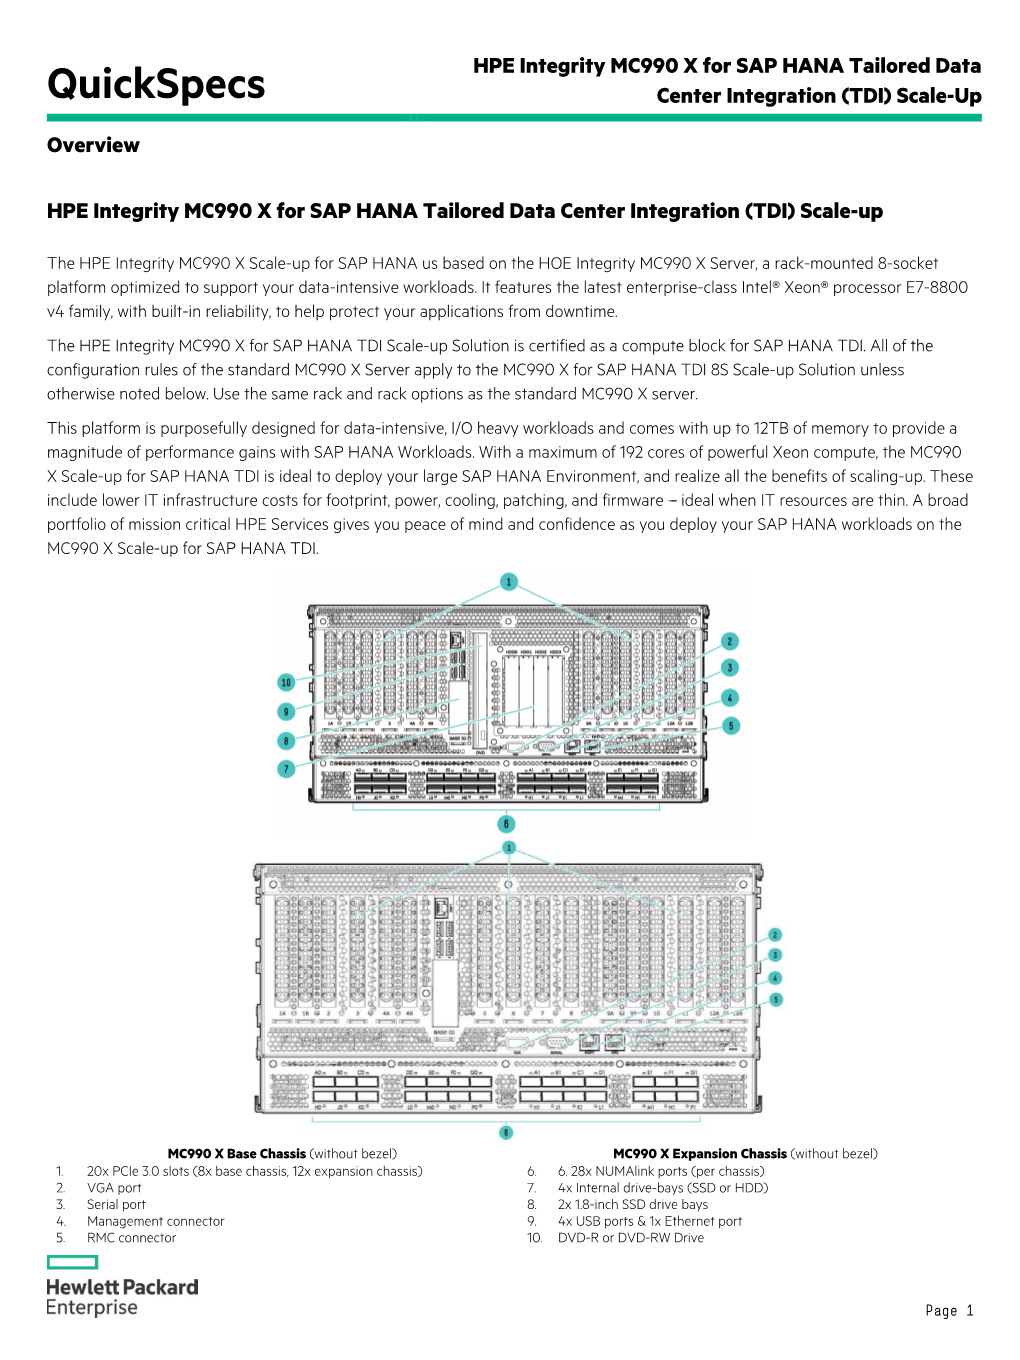 HPE Solutions for SAP HANA Tailored Data Center Integration (TDI)